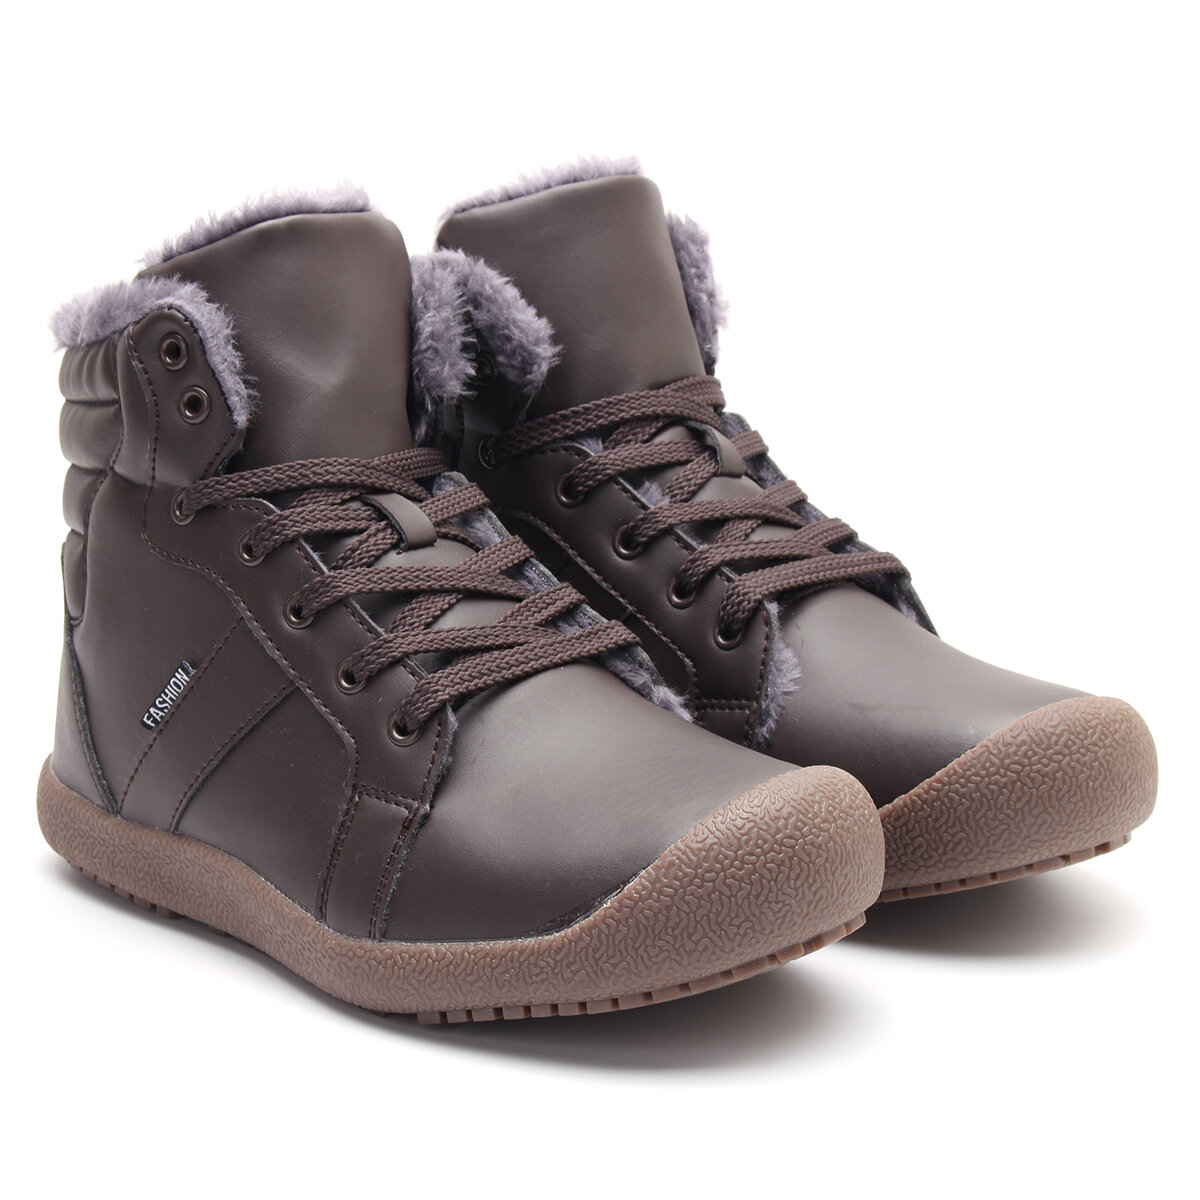 Botas de invierno cálidas para hombres, impermeables, de PU, de alta calidad, con cordones, cómodas zapatillas de deporte